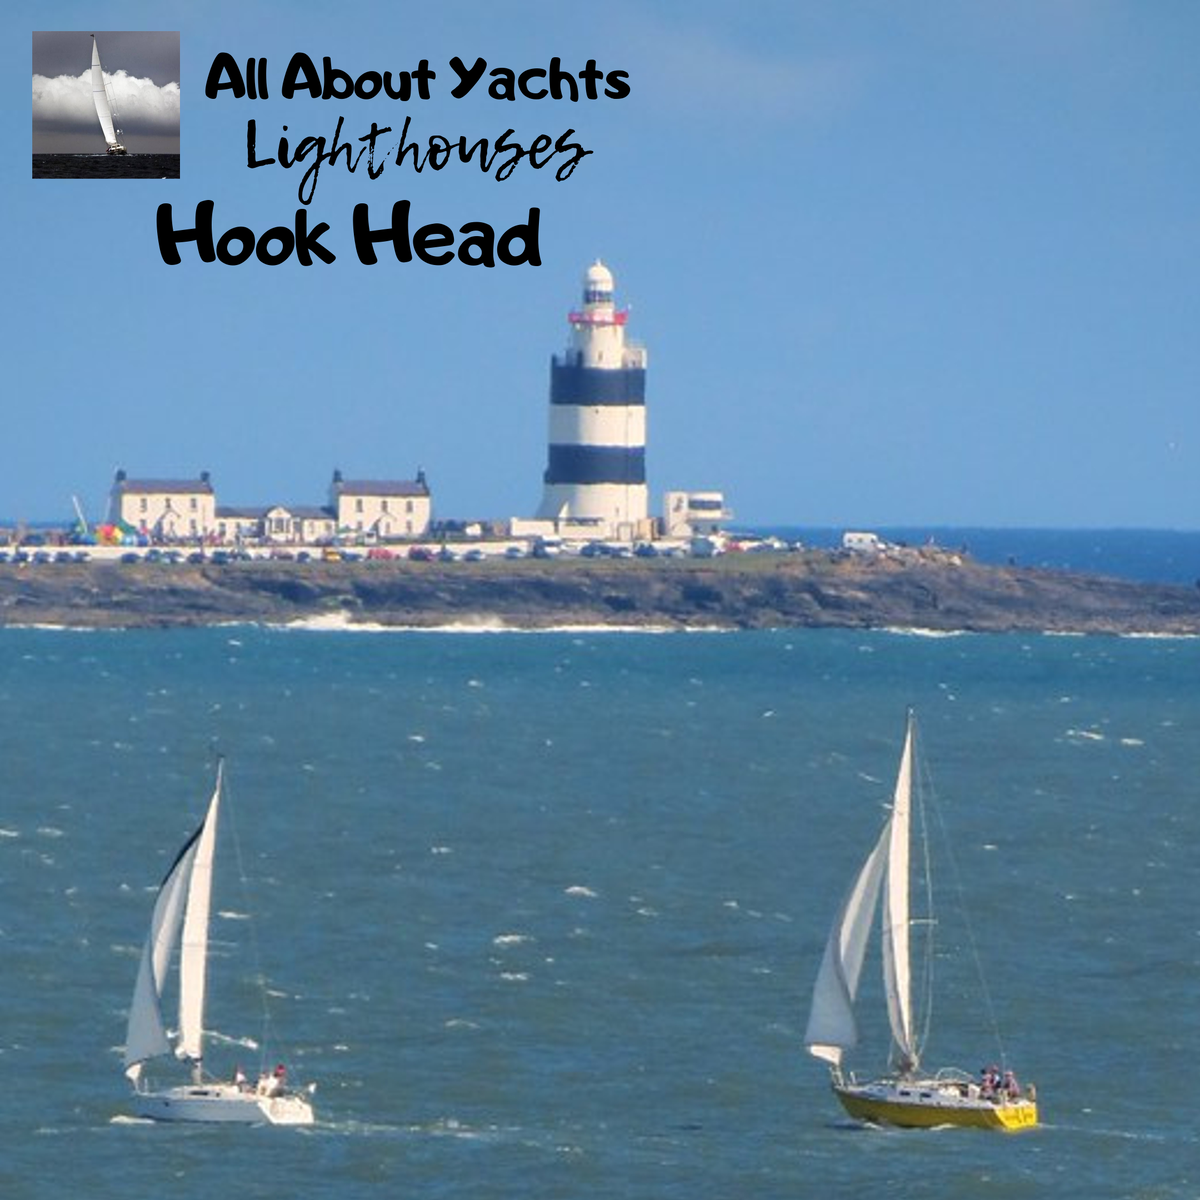 Маяк Hook Head один из самых старых действующих маяков в мире. Ему уже более 800 лет. Легенда гласит что в пятом веке один монах заметил, что около мыса часто происходят кораблекрушения.-2